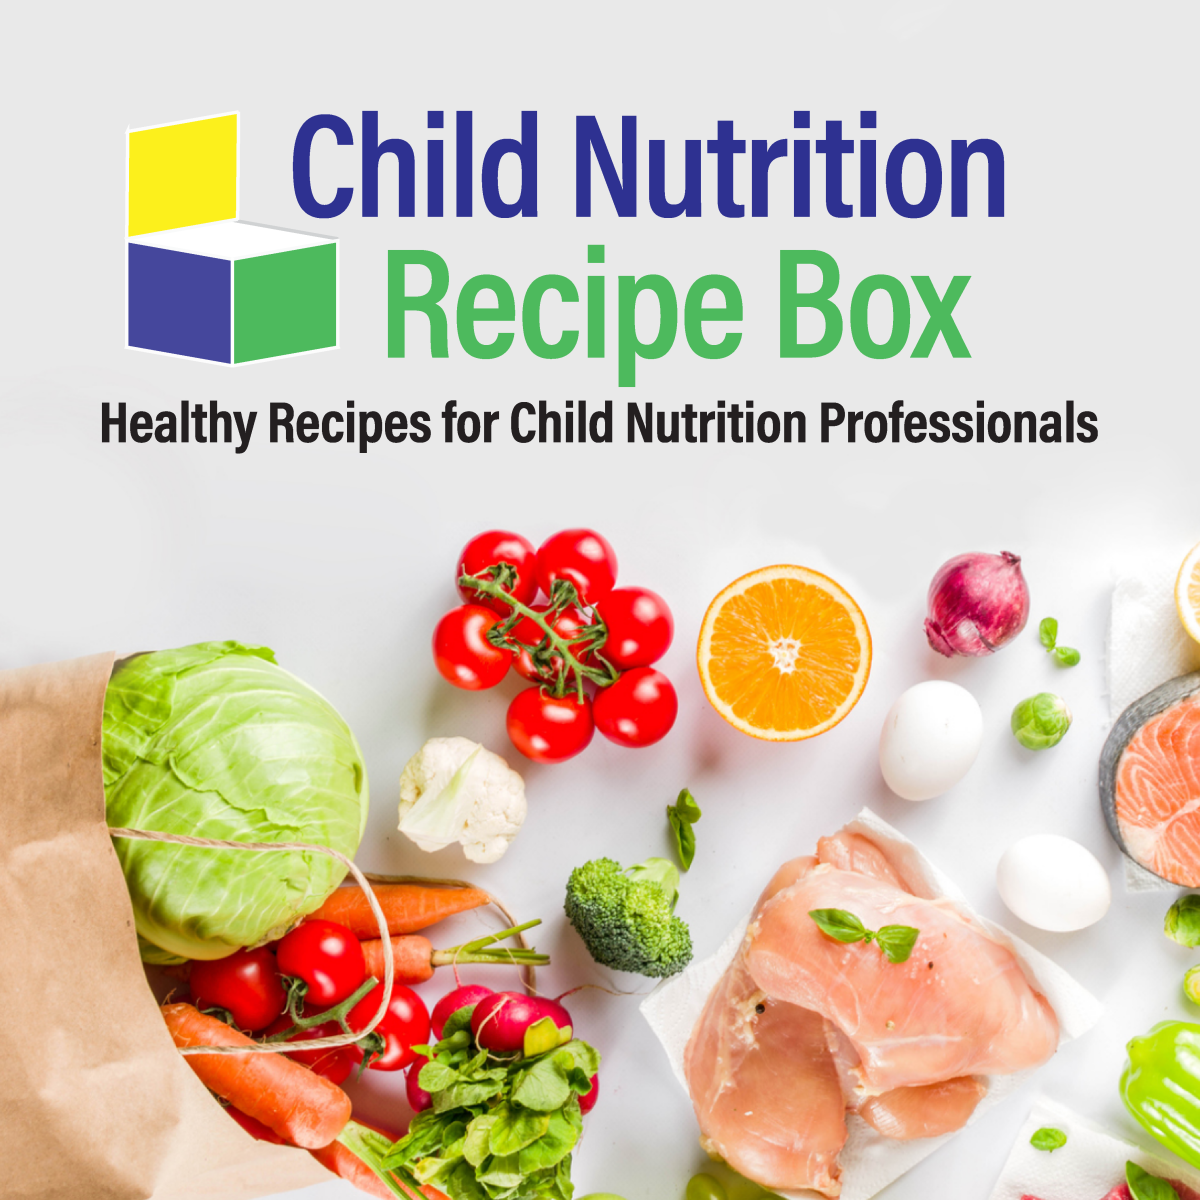 Child Nutrition Recipe Box